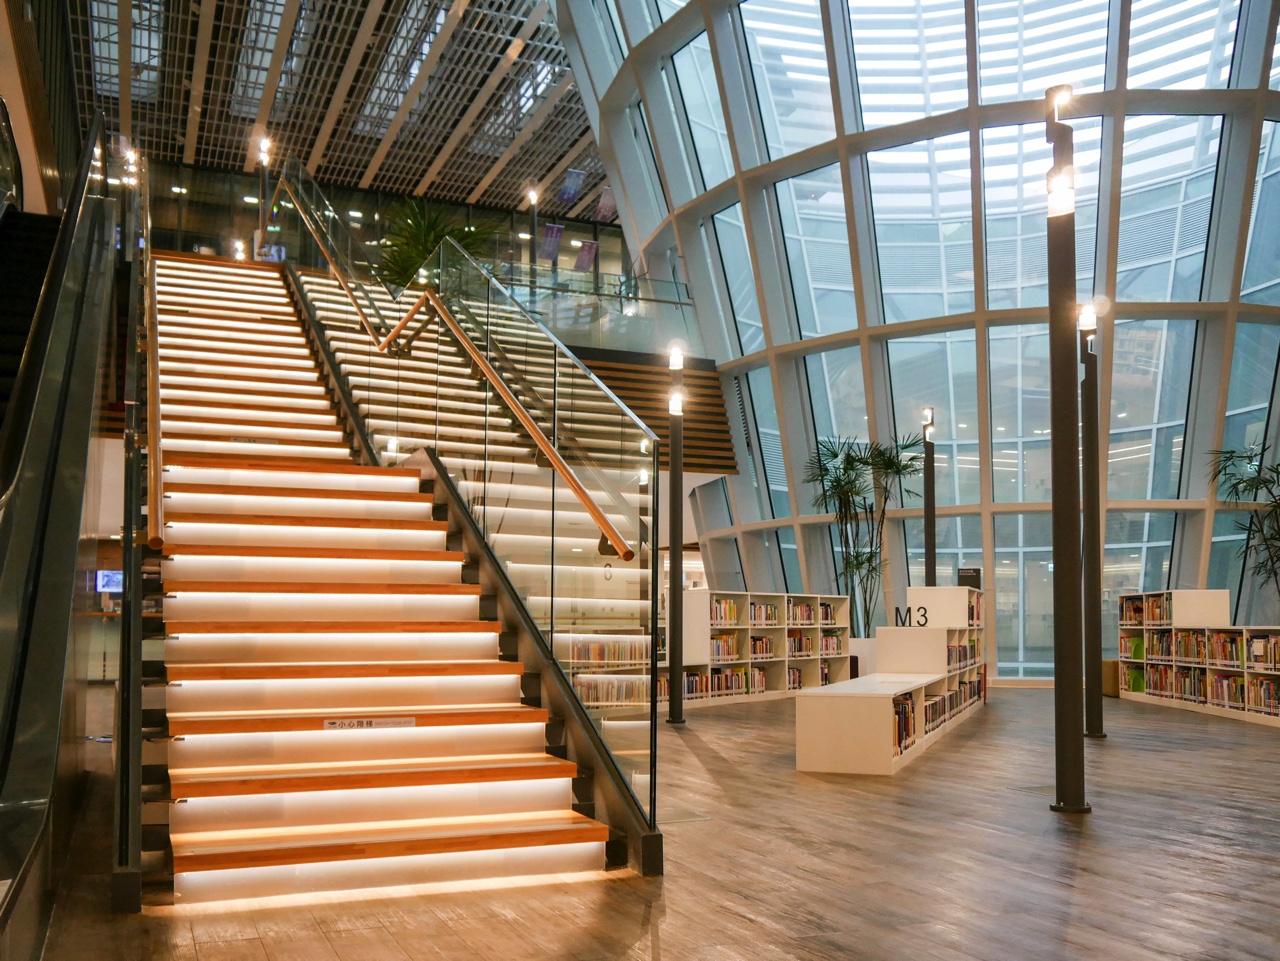 桃園市圖書館新總館の階段